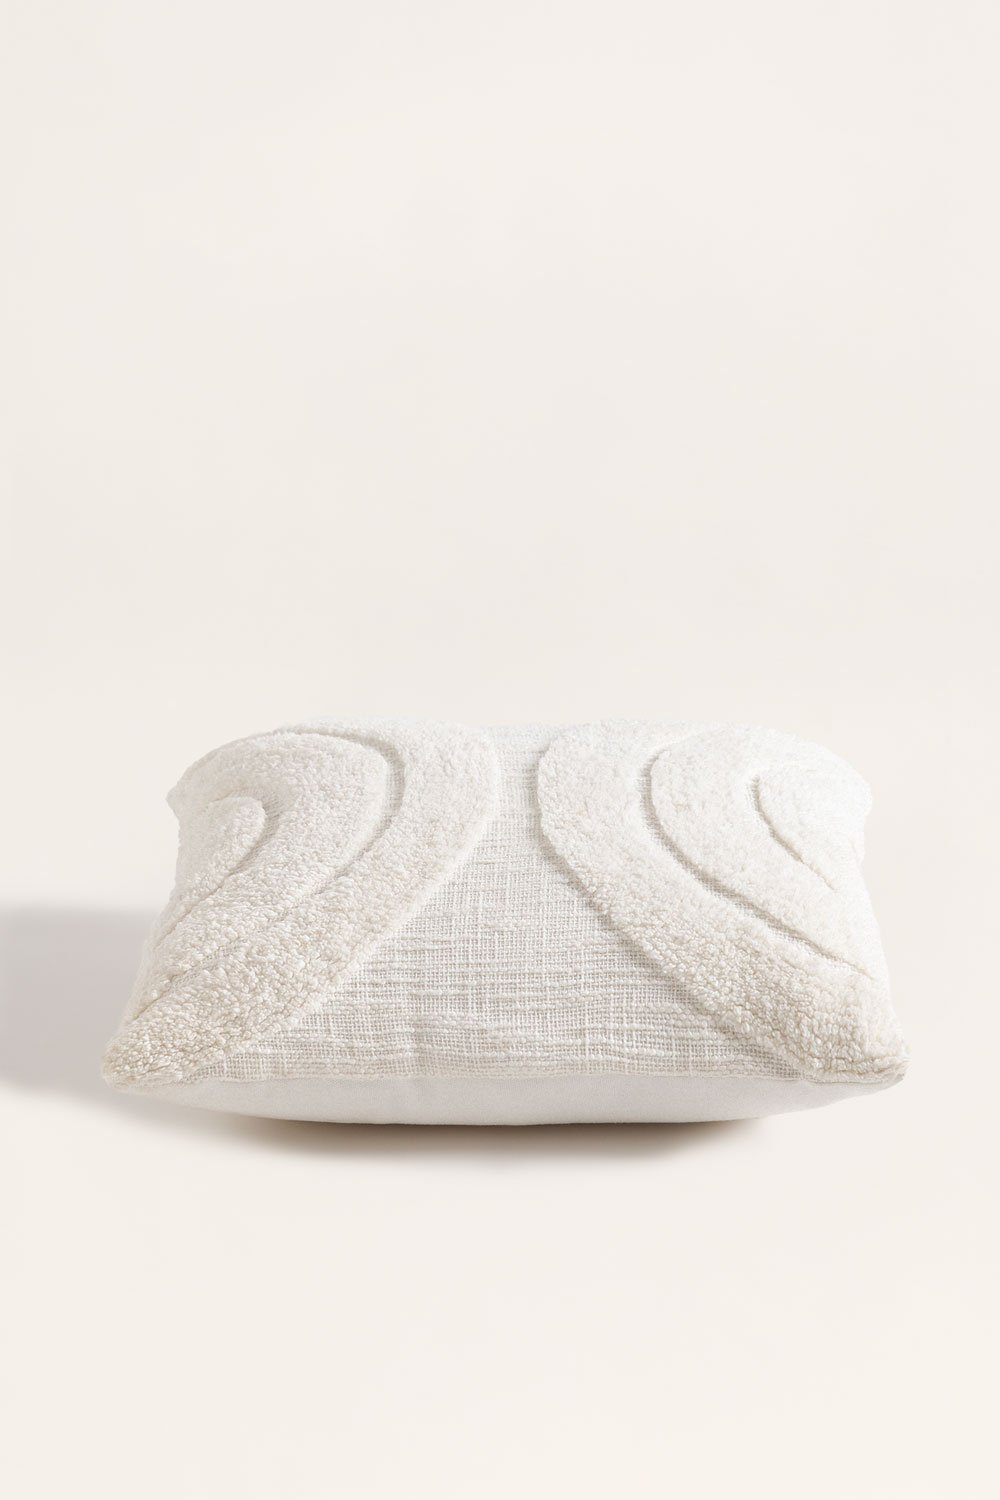 Cuscino quadrato in cotone (45x45 cm) Zaylee, immagine della galleria 2